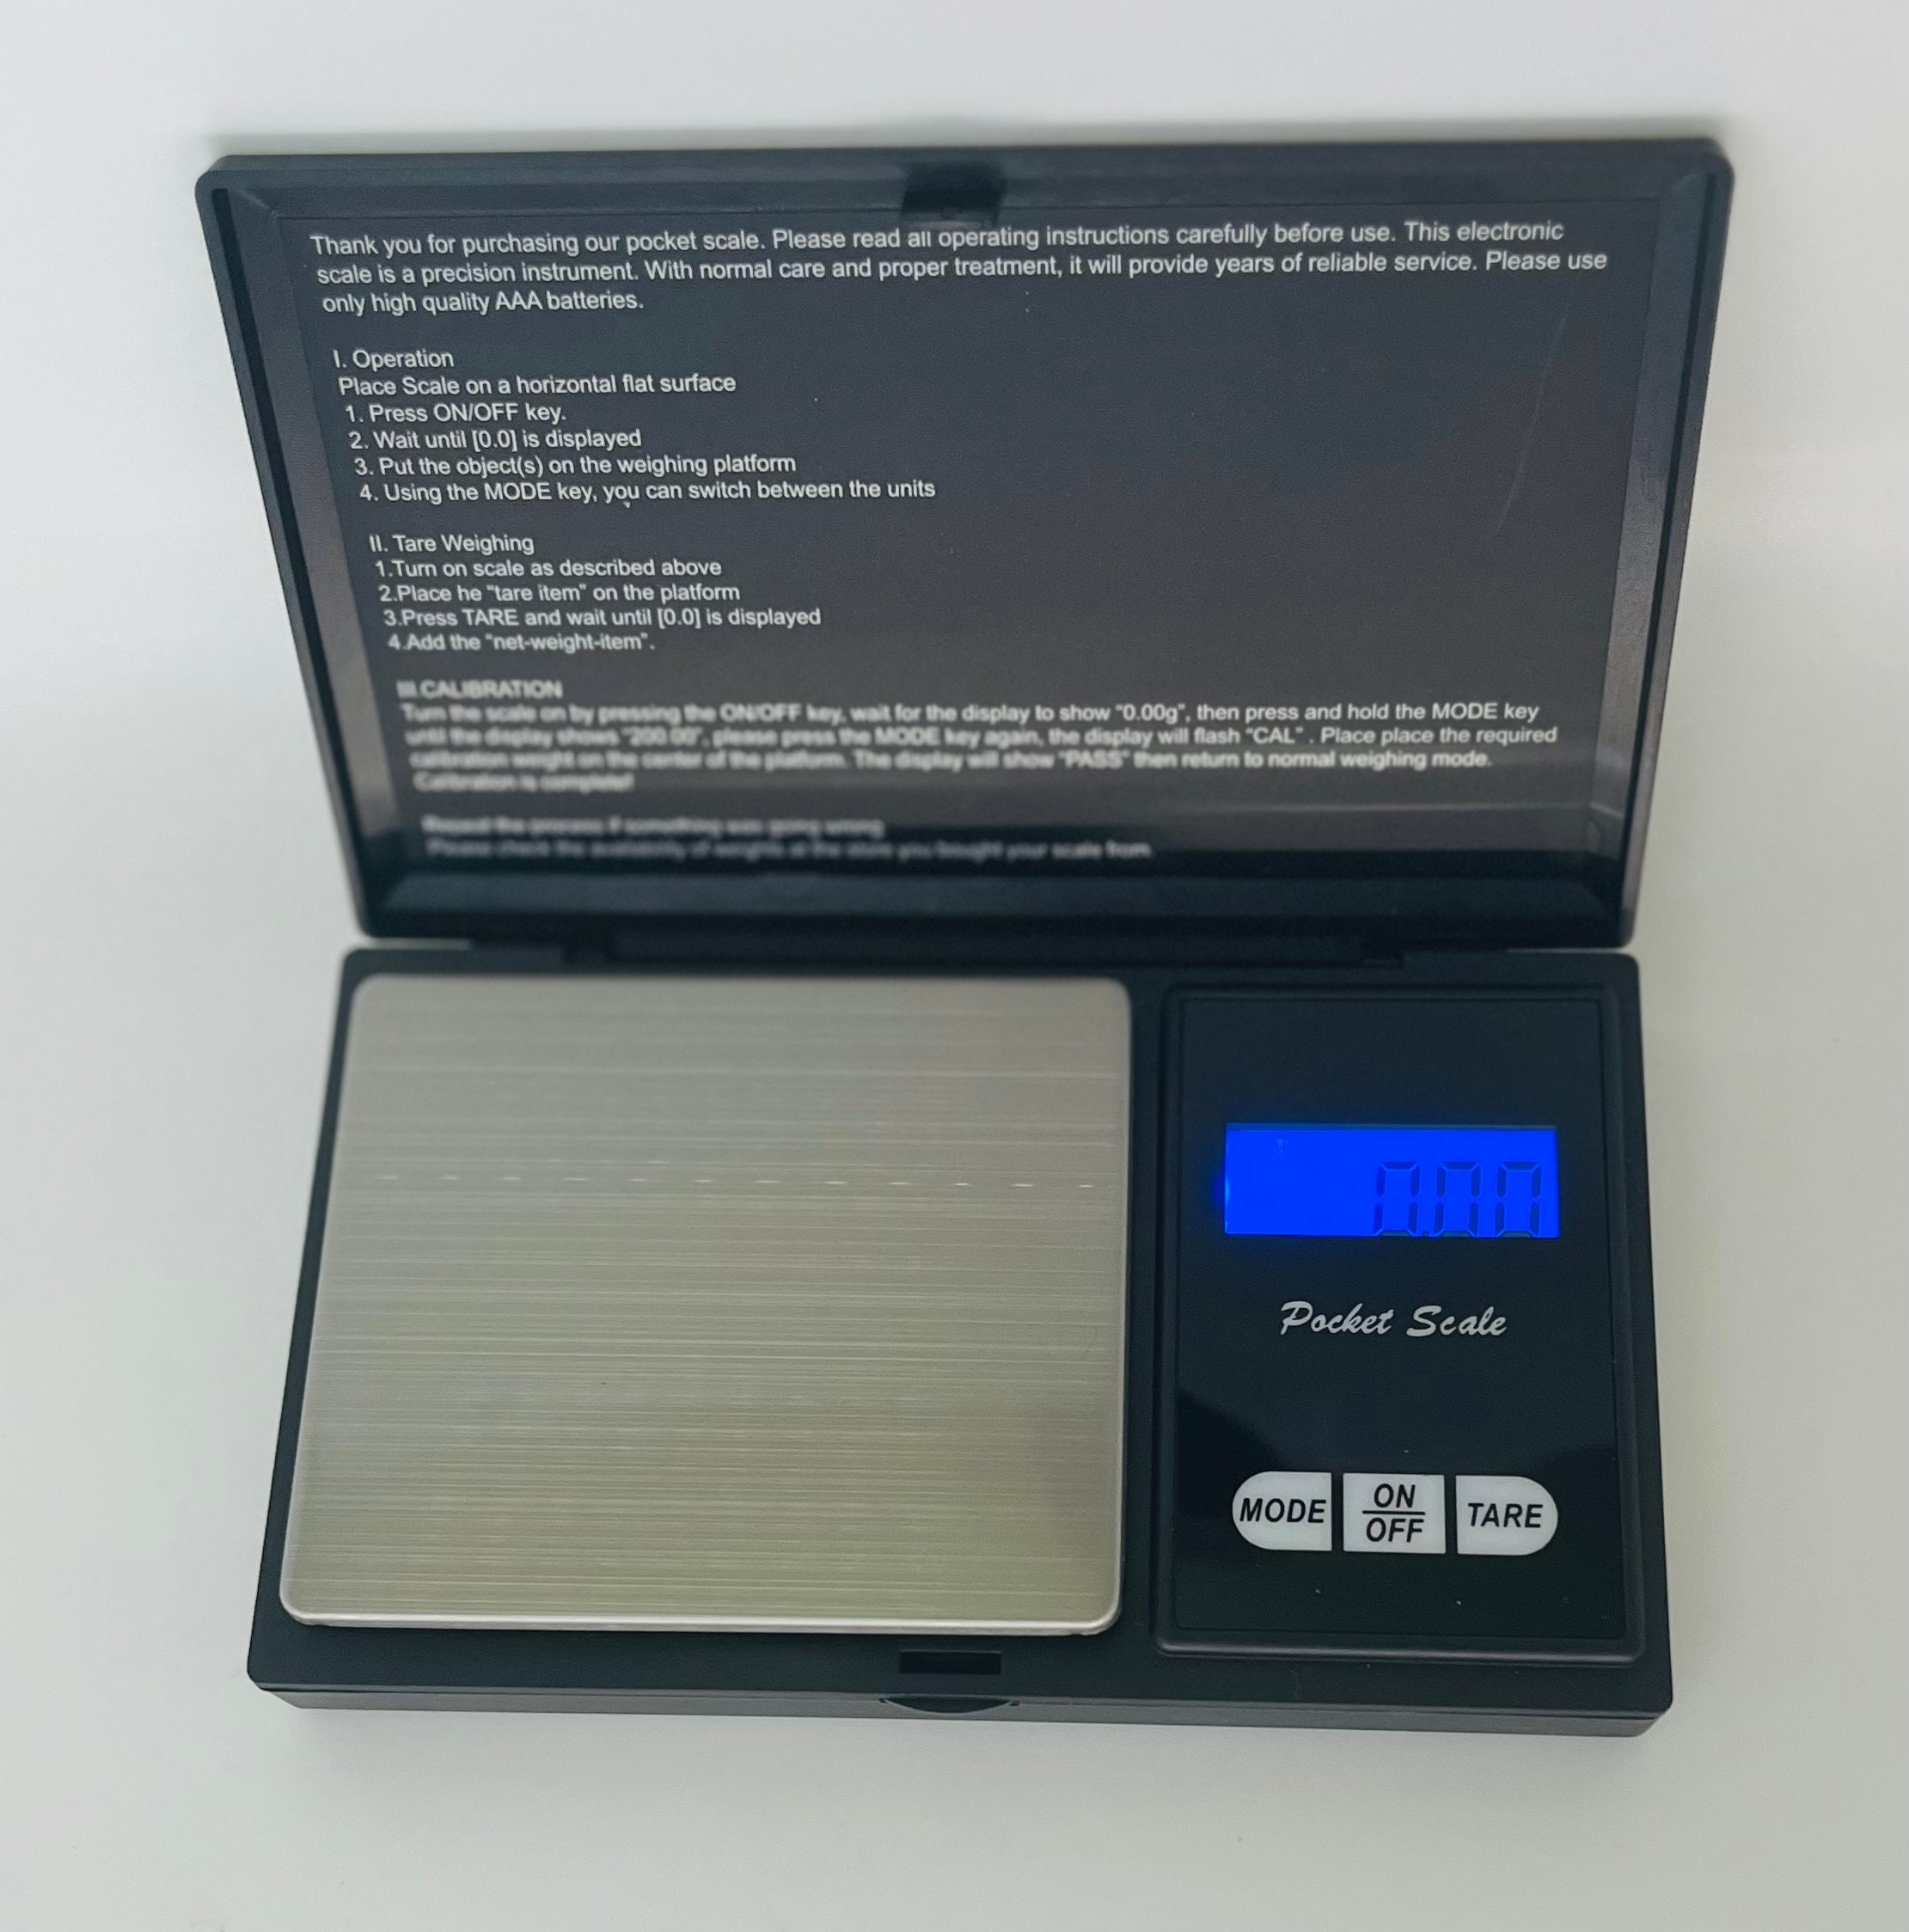 JARDIS Digital Pocket Scale 100g/0.01g